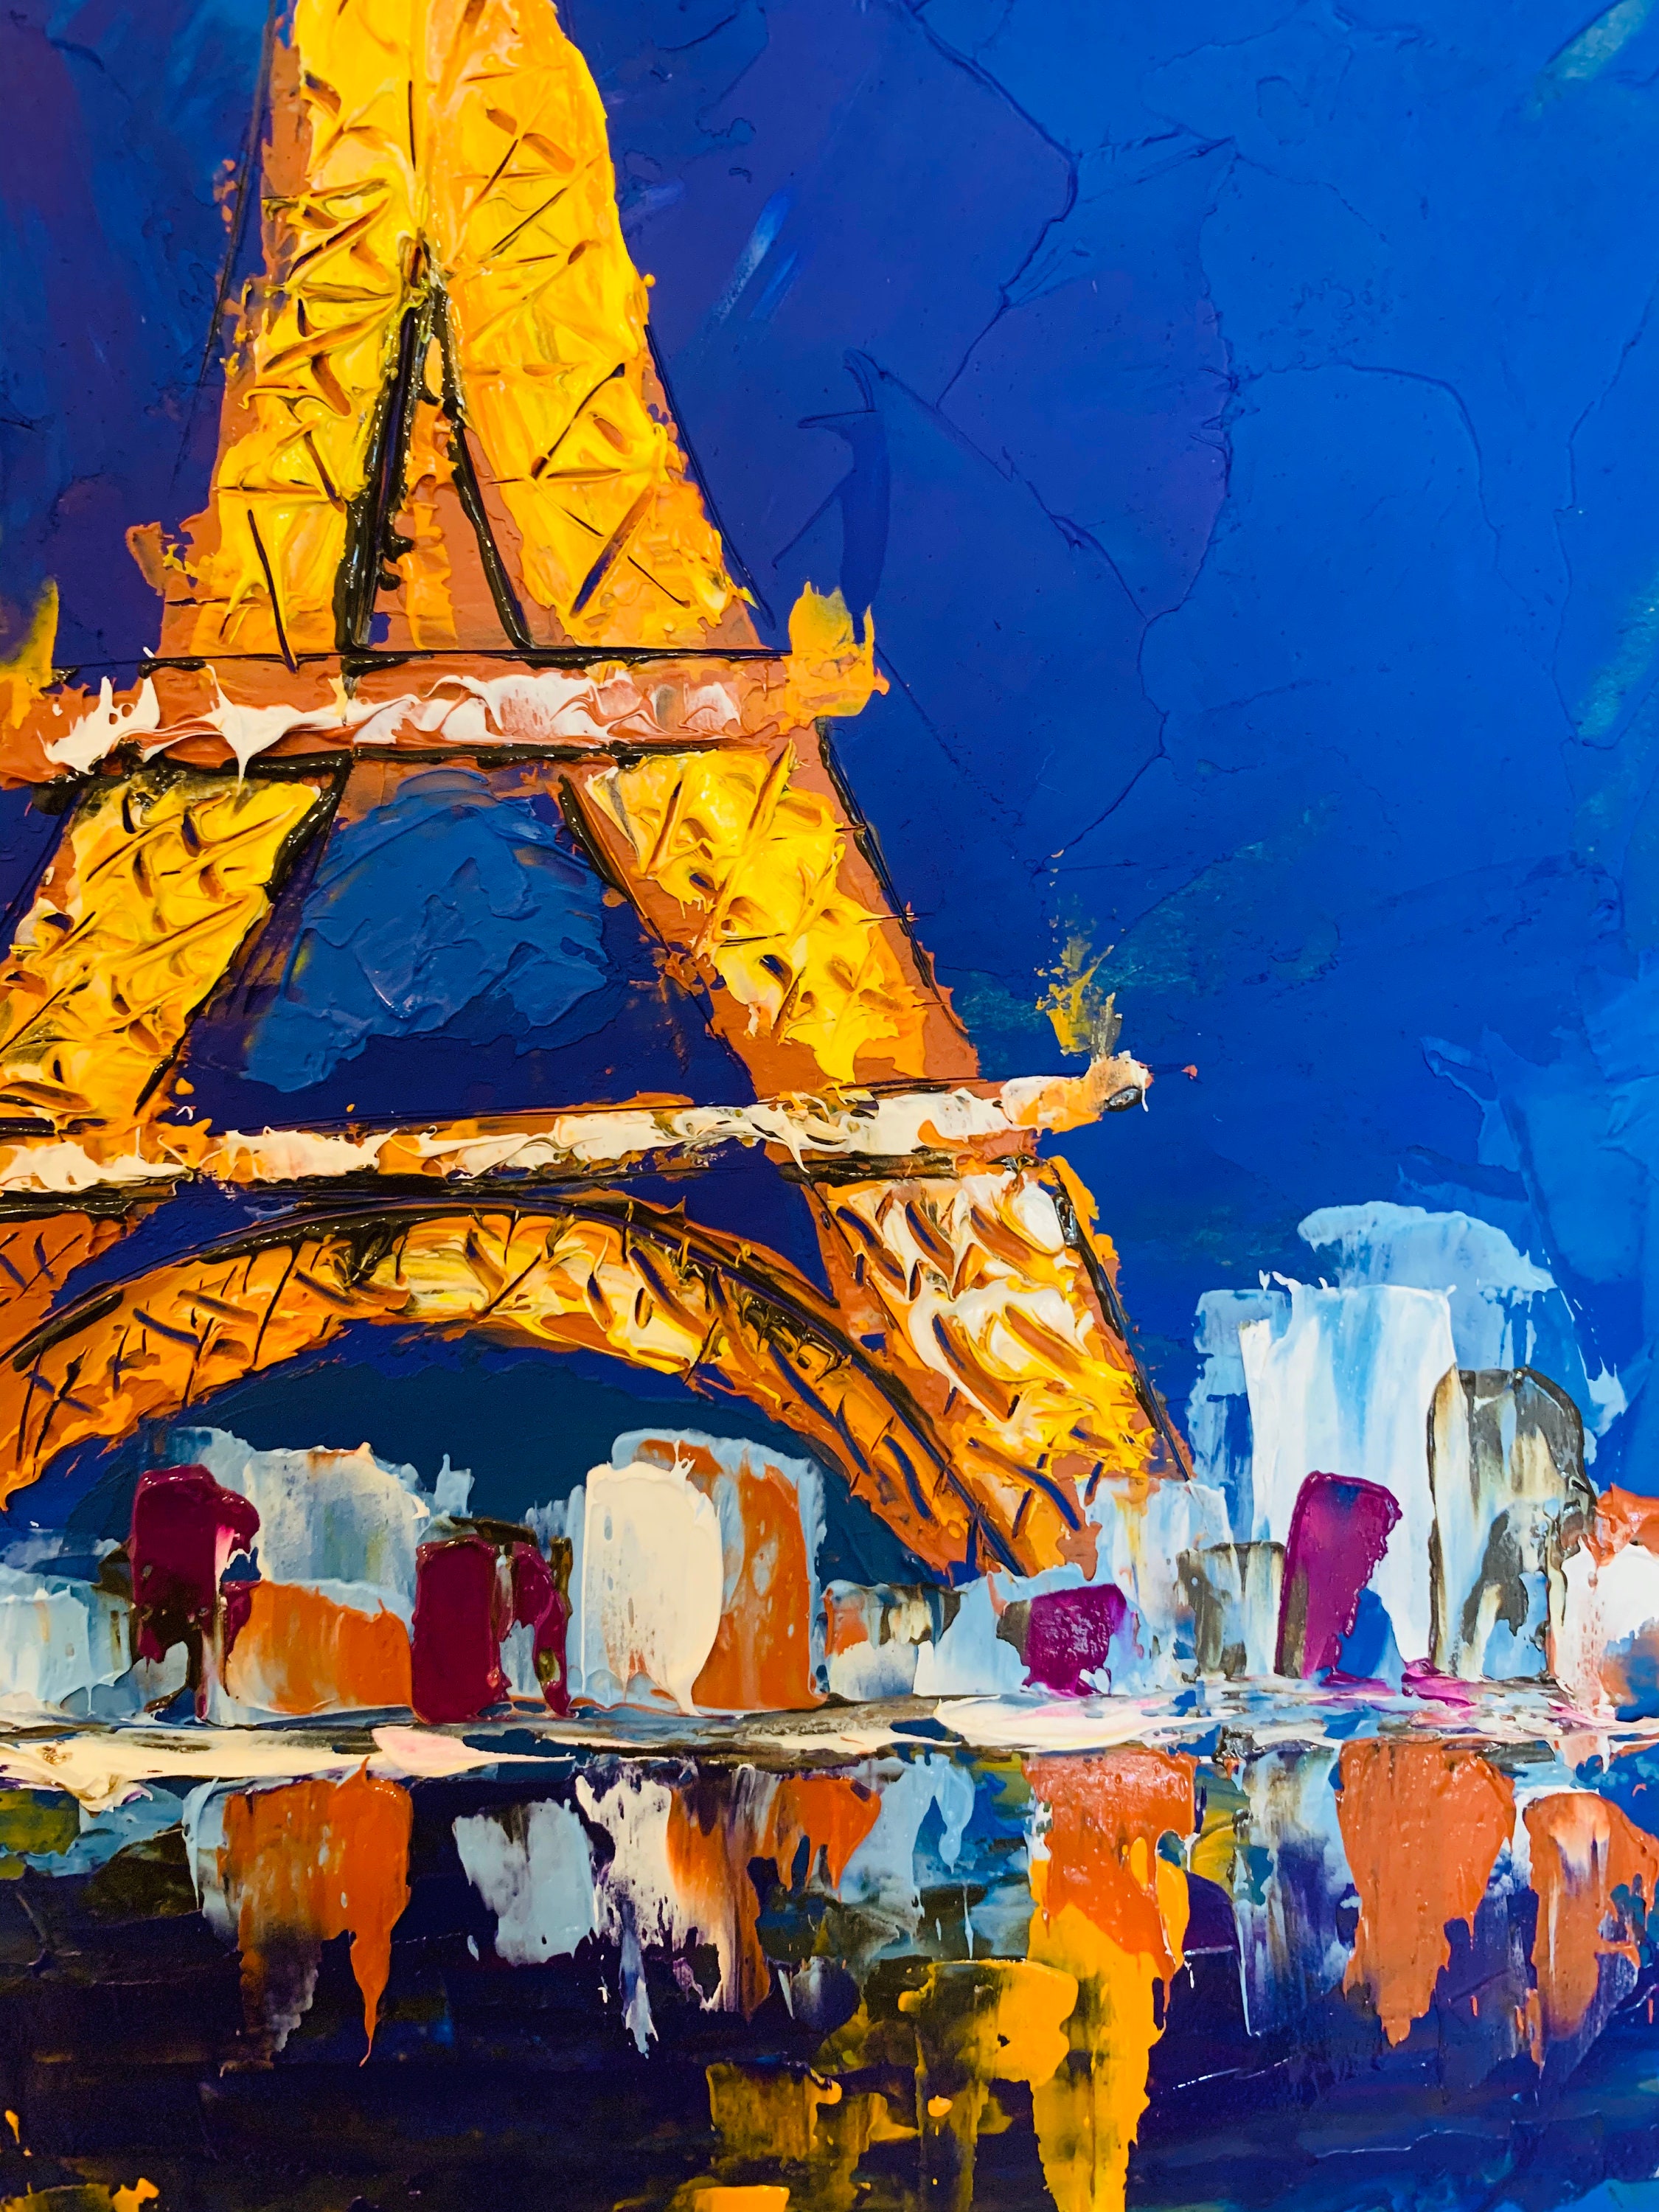 Paris Painting Eiffel Tower Original Art Cityscape Oil Etsy